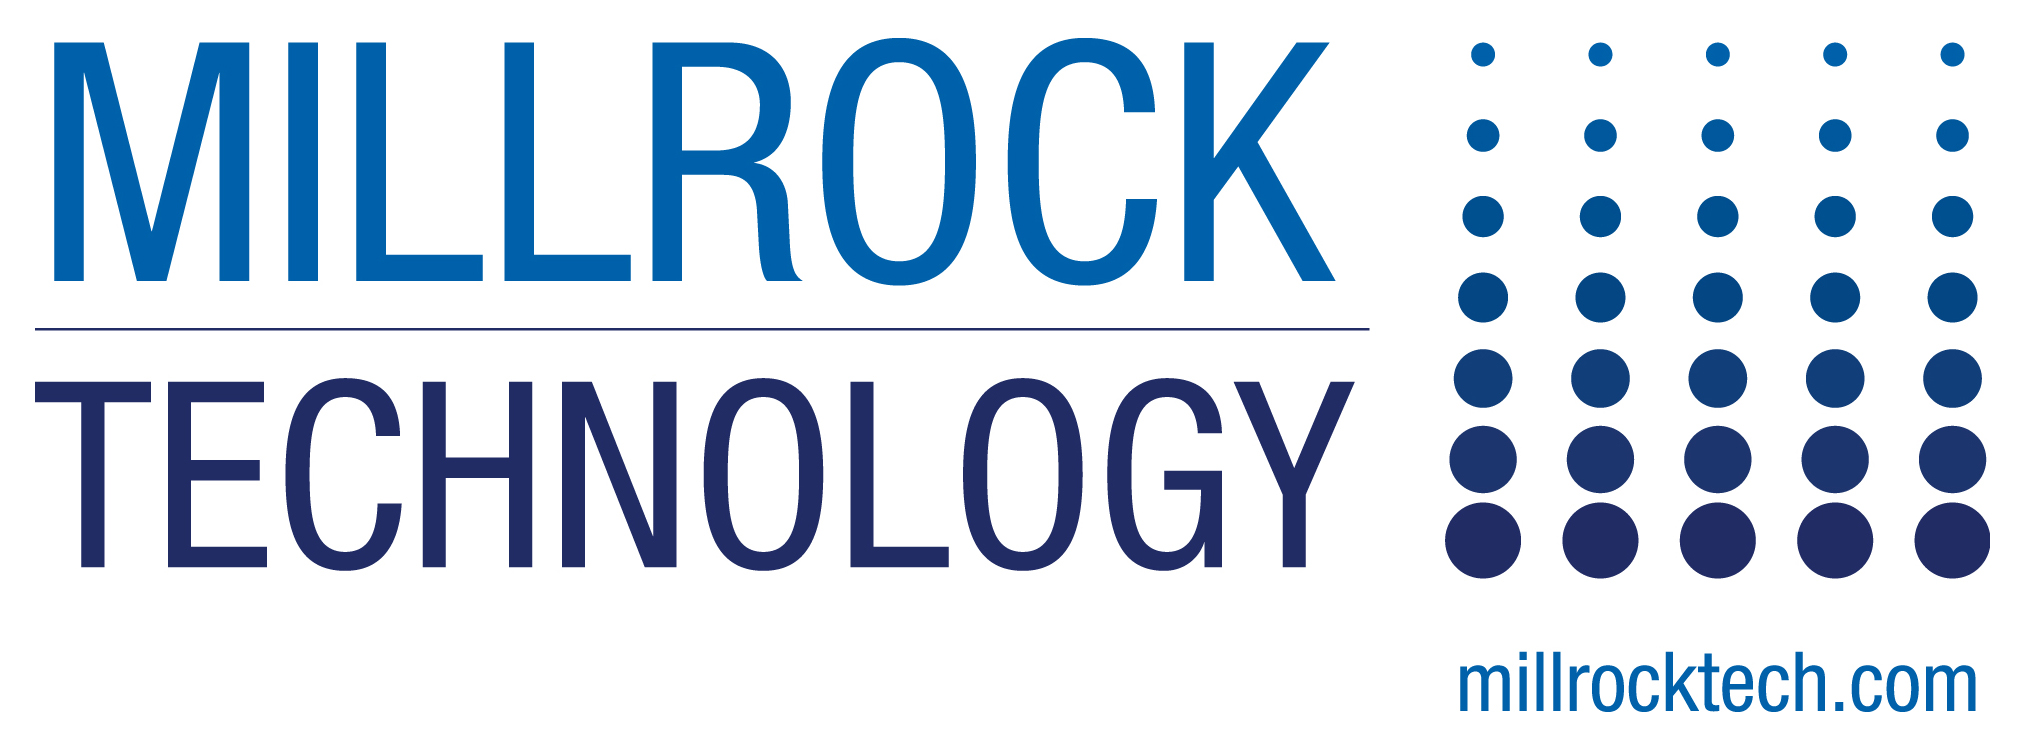 MillrockTech_Logo.jpg